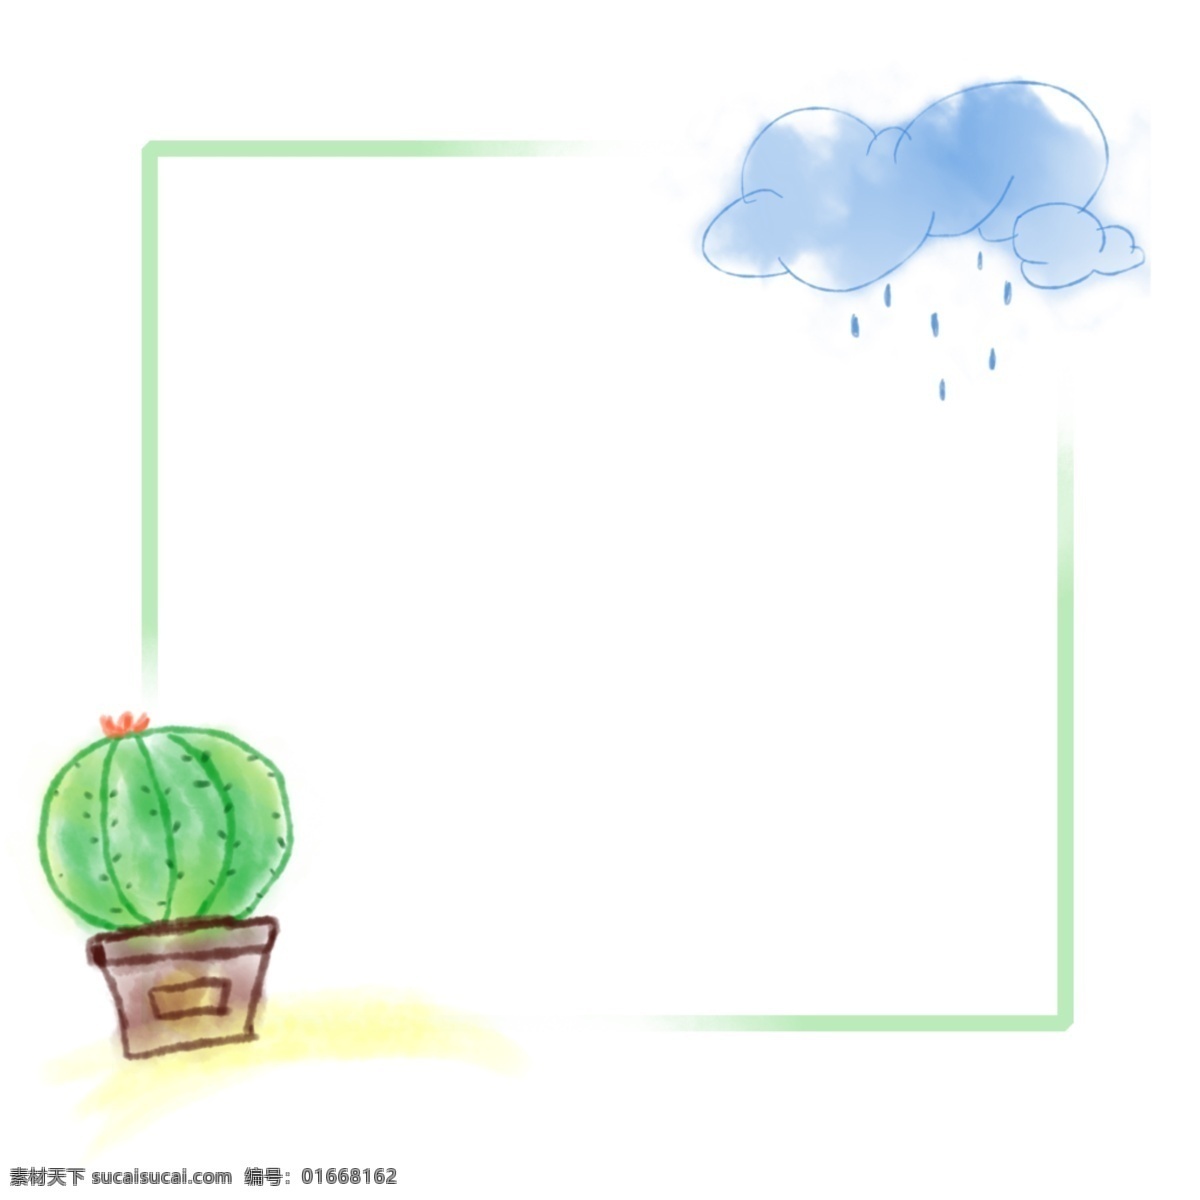 绿色 免 抠 仙人掌 云朵 植物 边框 小清新 简约 水彩 手绘 简单 卡通 植物边框